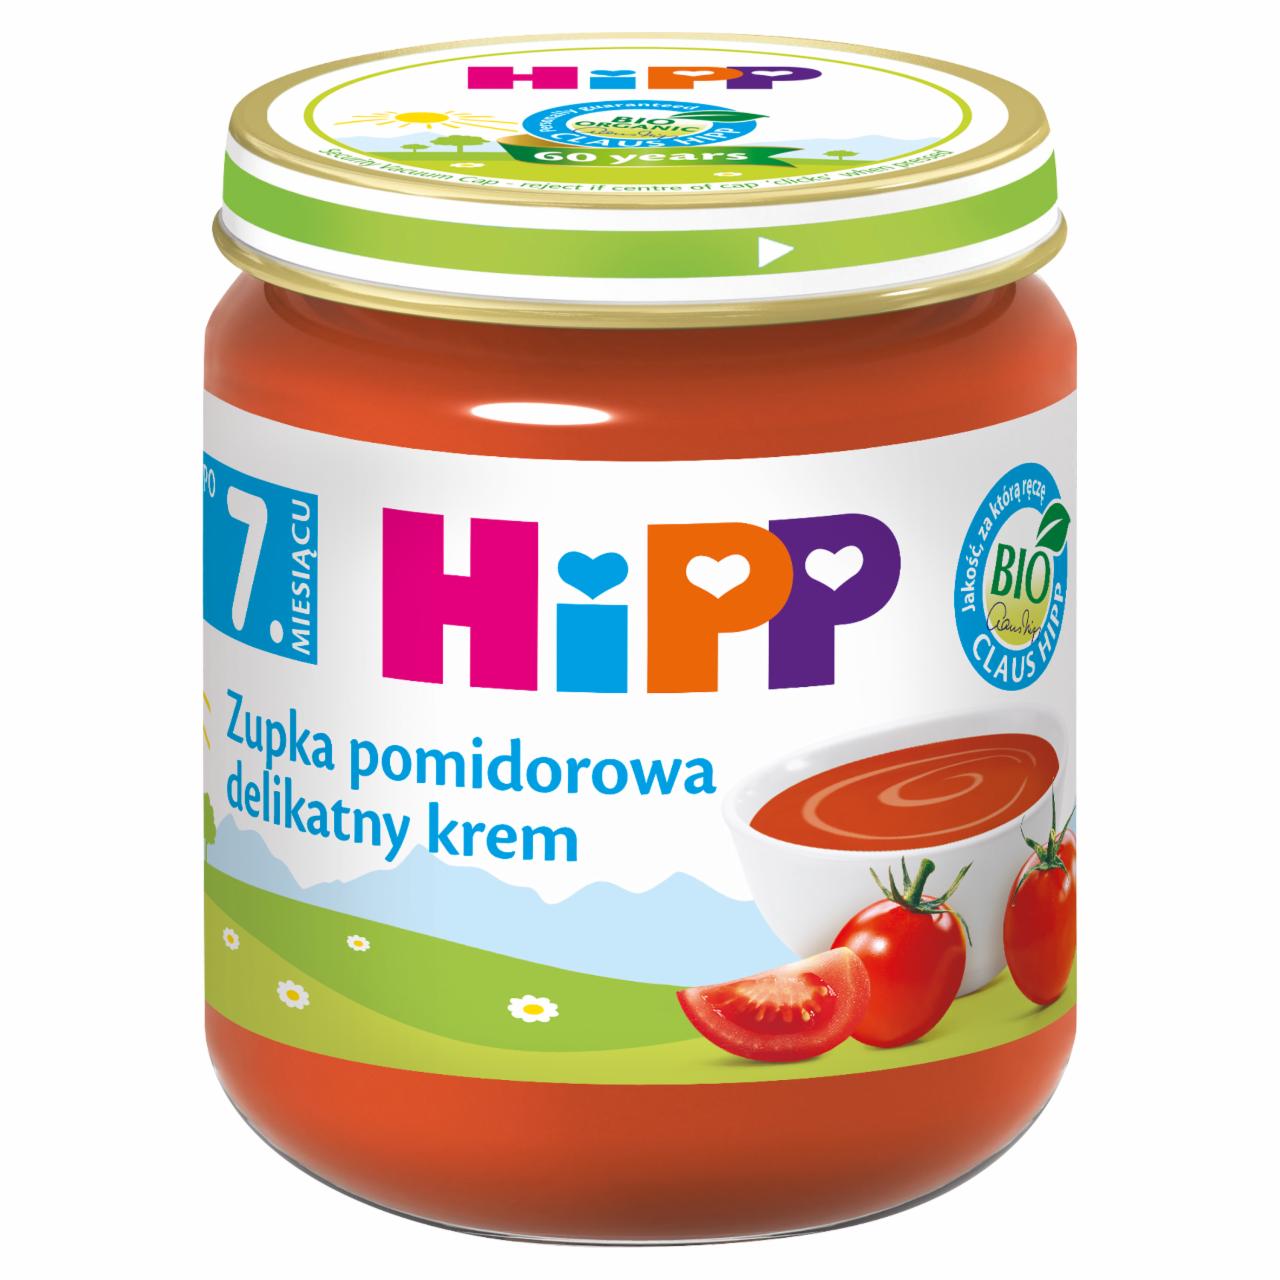 Zdjęcia - HiPP BIO Zupka pomidorowa delikatny krem po 7. miesiącu 200 g